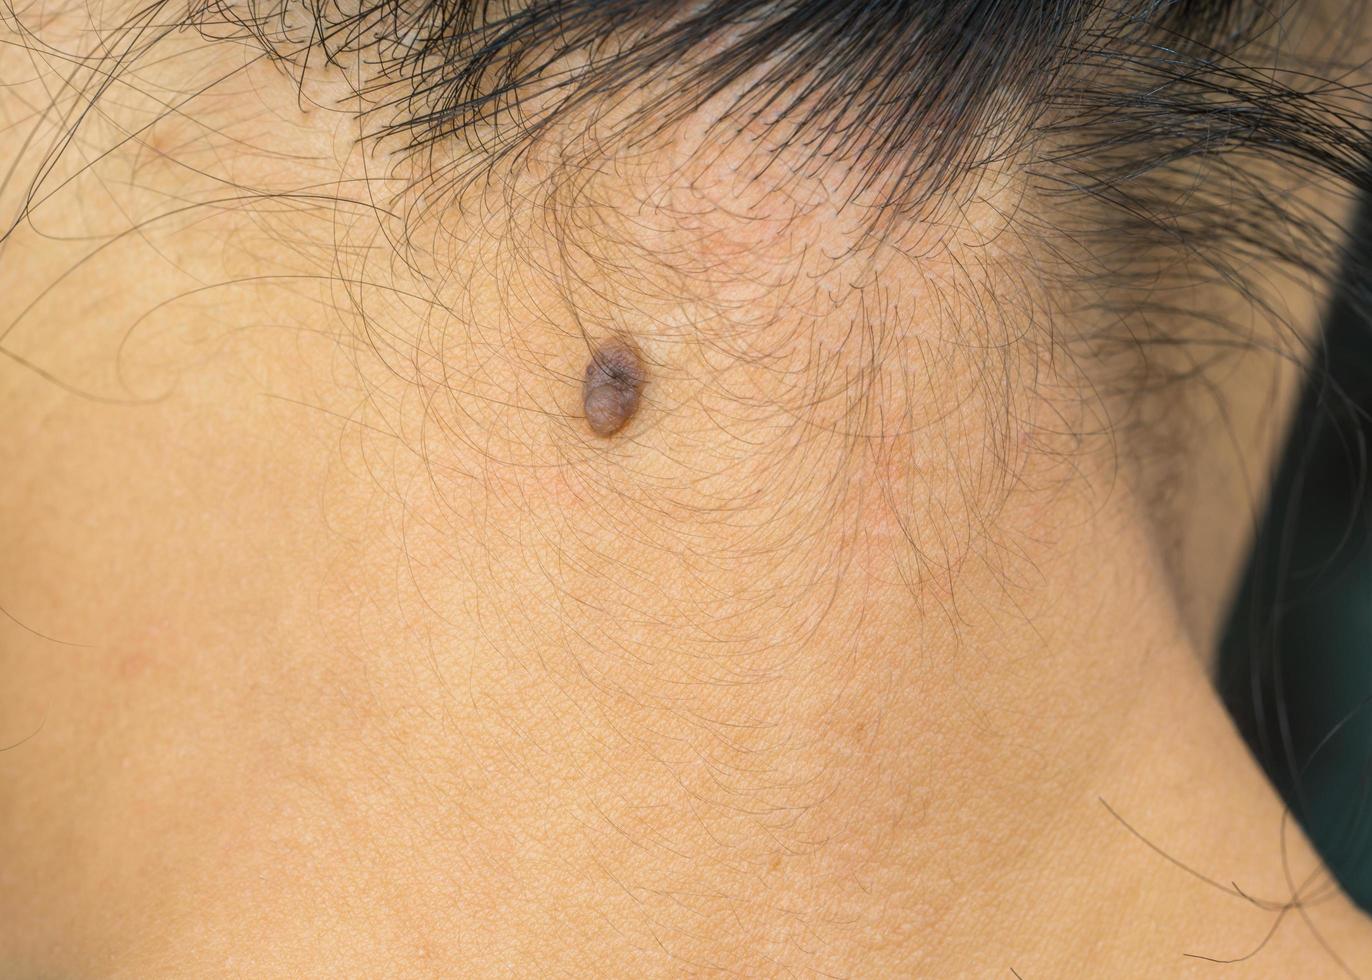 svart mullvad på baksidan av nacken huden hos asiatisk kvinna behöver co2-laser för borttagning. foto